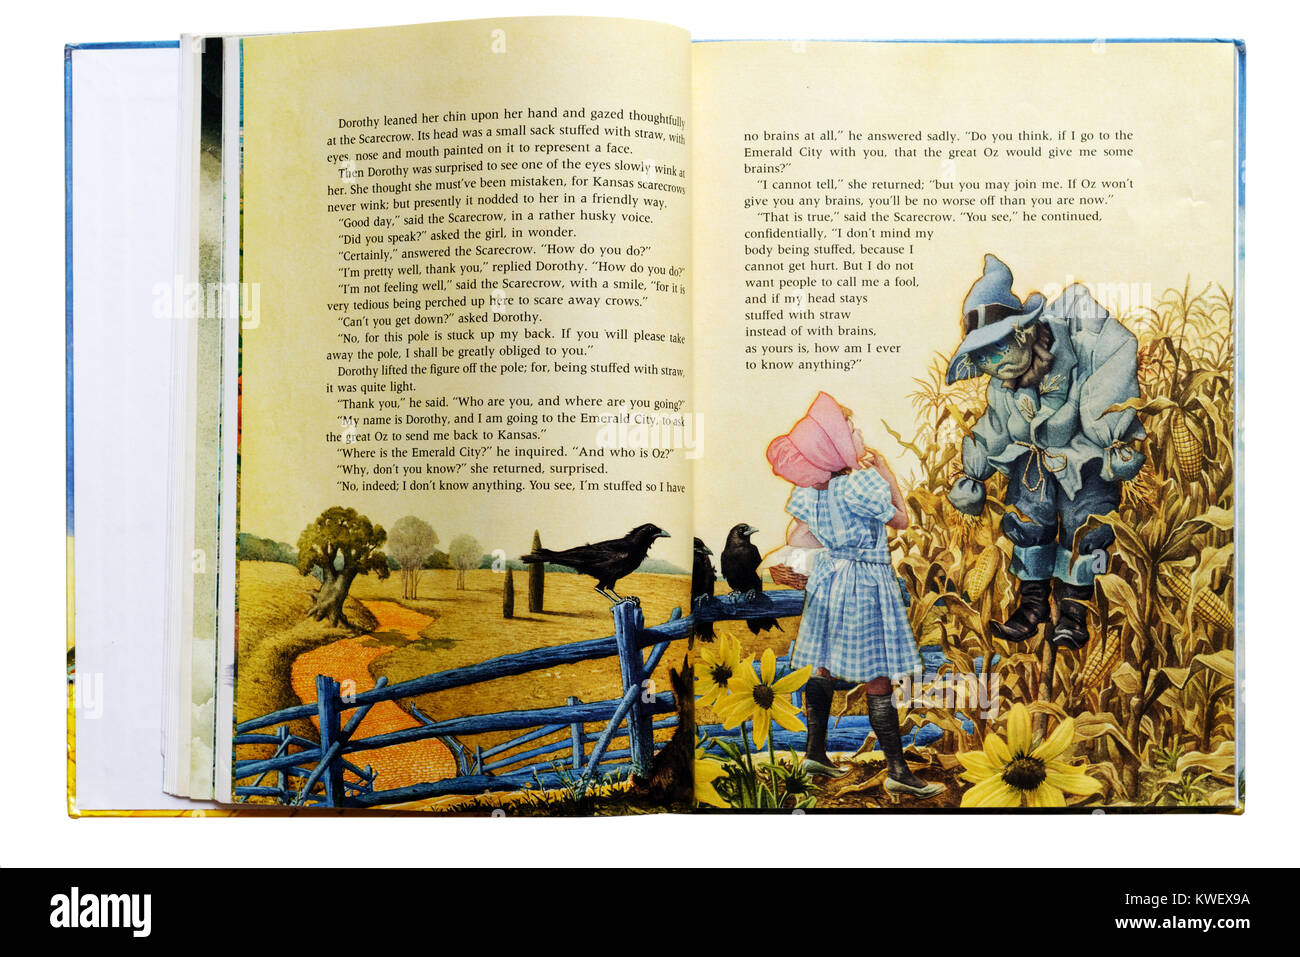 Dorothy incontra il spaventapasseri in un libro illustrato del Wizard of Oz Foto Stock